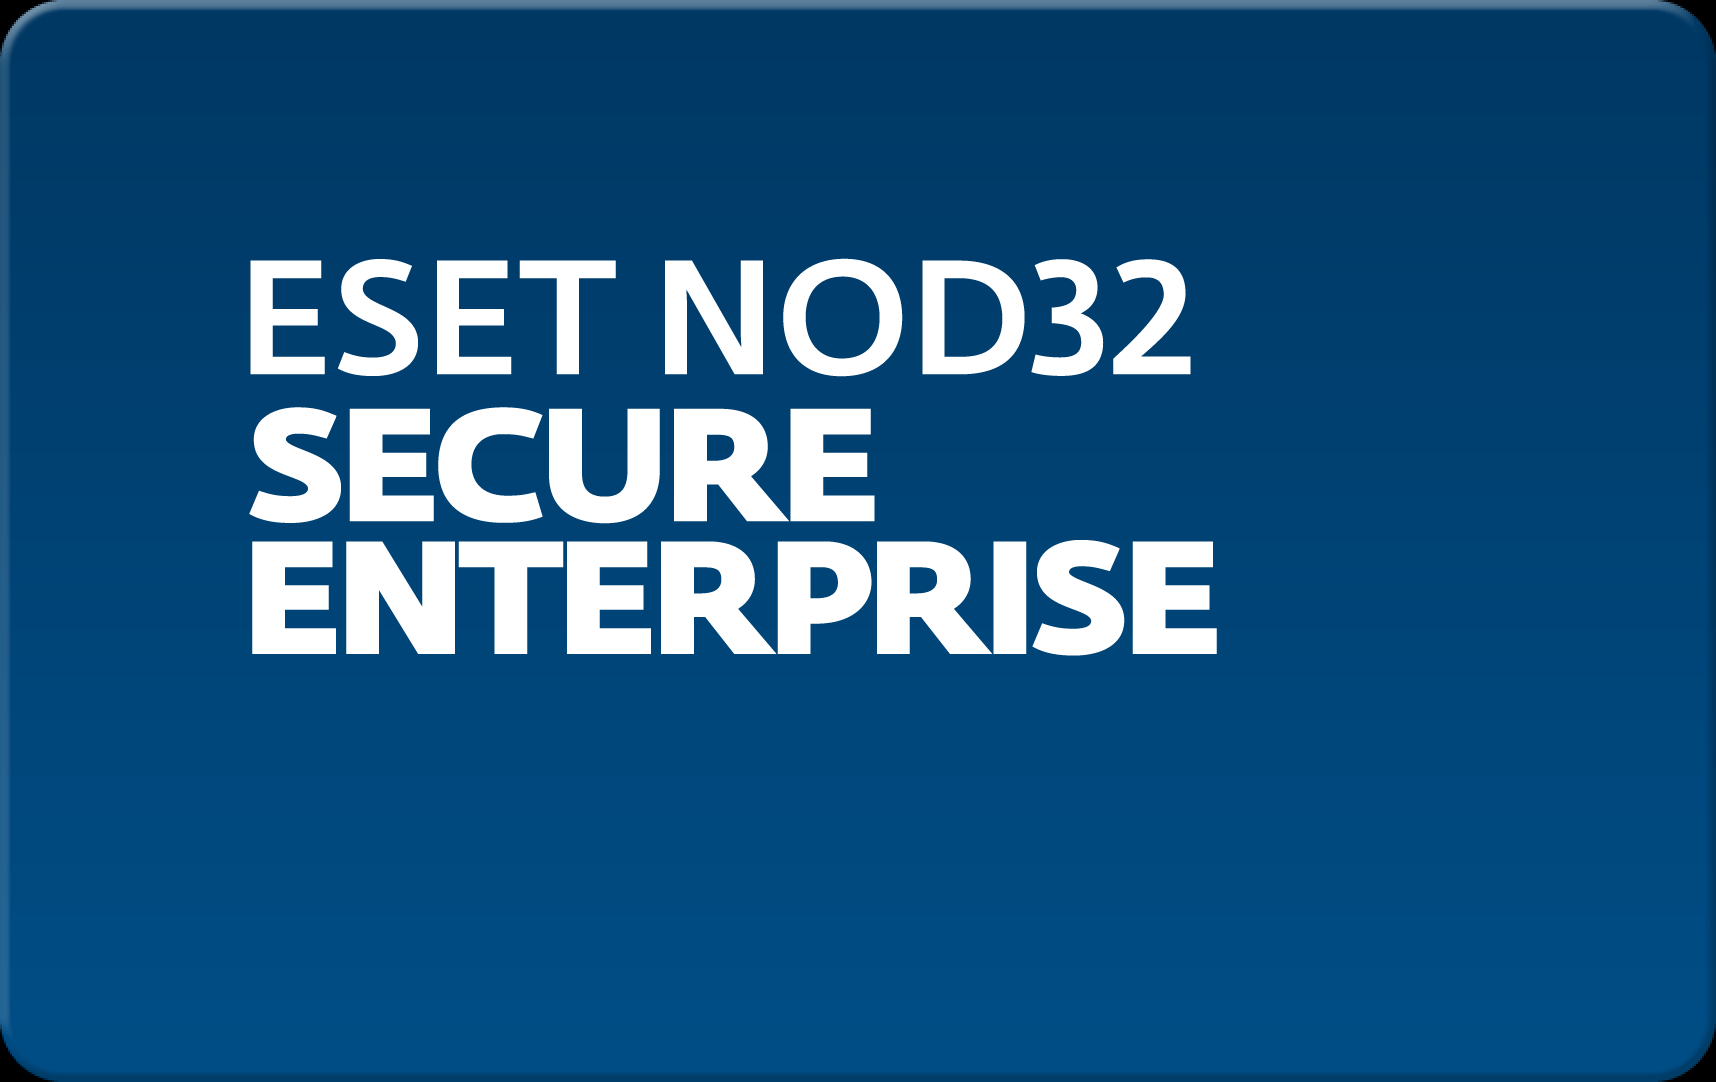        Eset NOD32 Secure Enterprise  161  NOD32-ESE-NS-1-161  #1